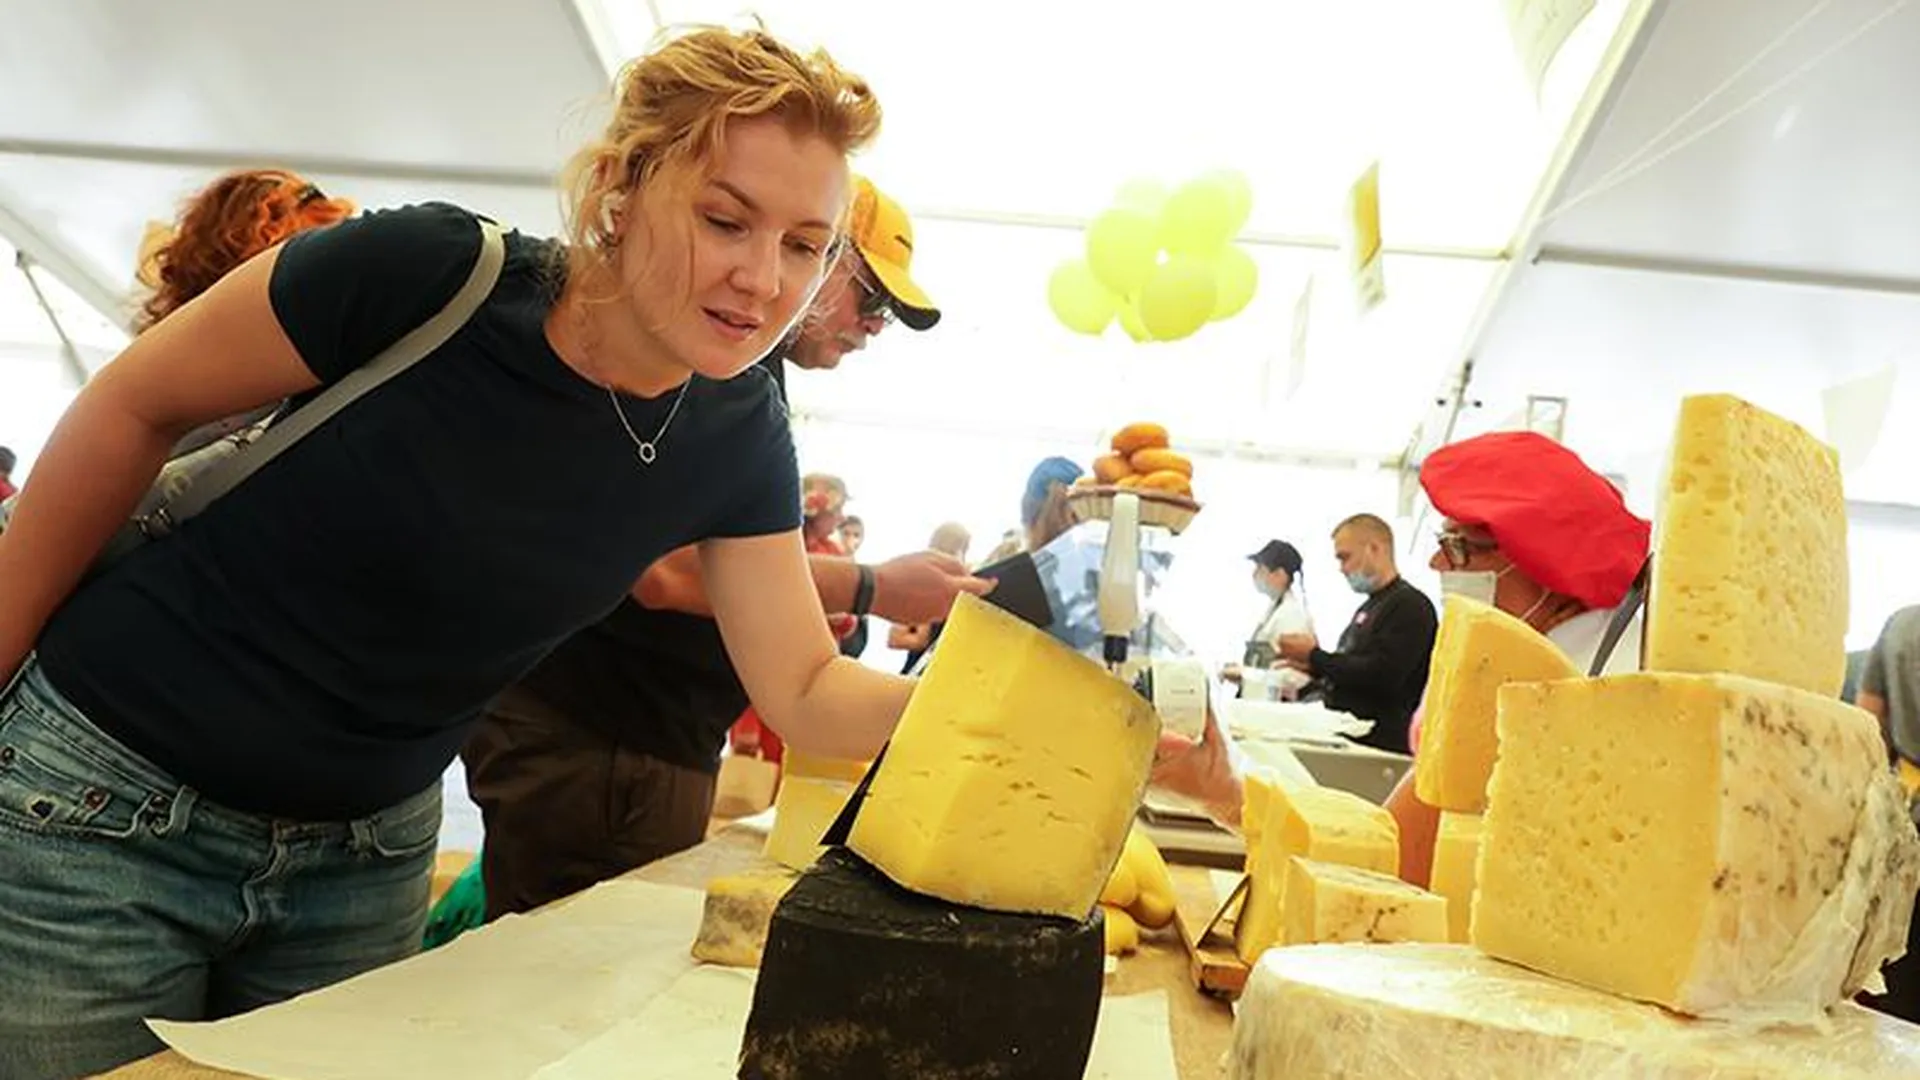 Гастрономический фестиваль «Сыр. Пир. Мир» готовится побить рекорды по количеству участников, гостей и объему продаж